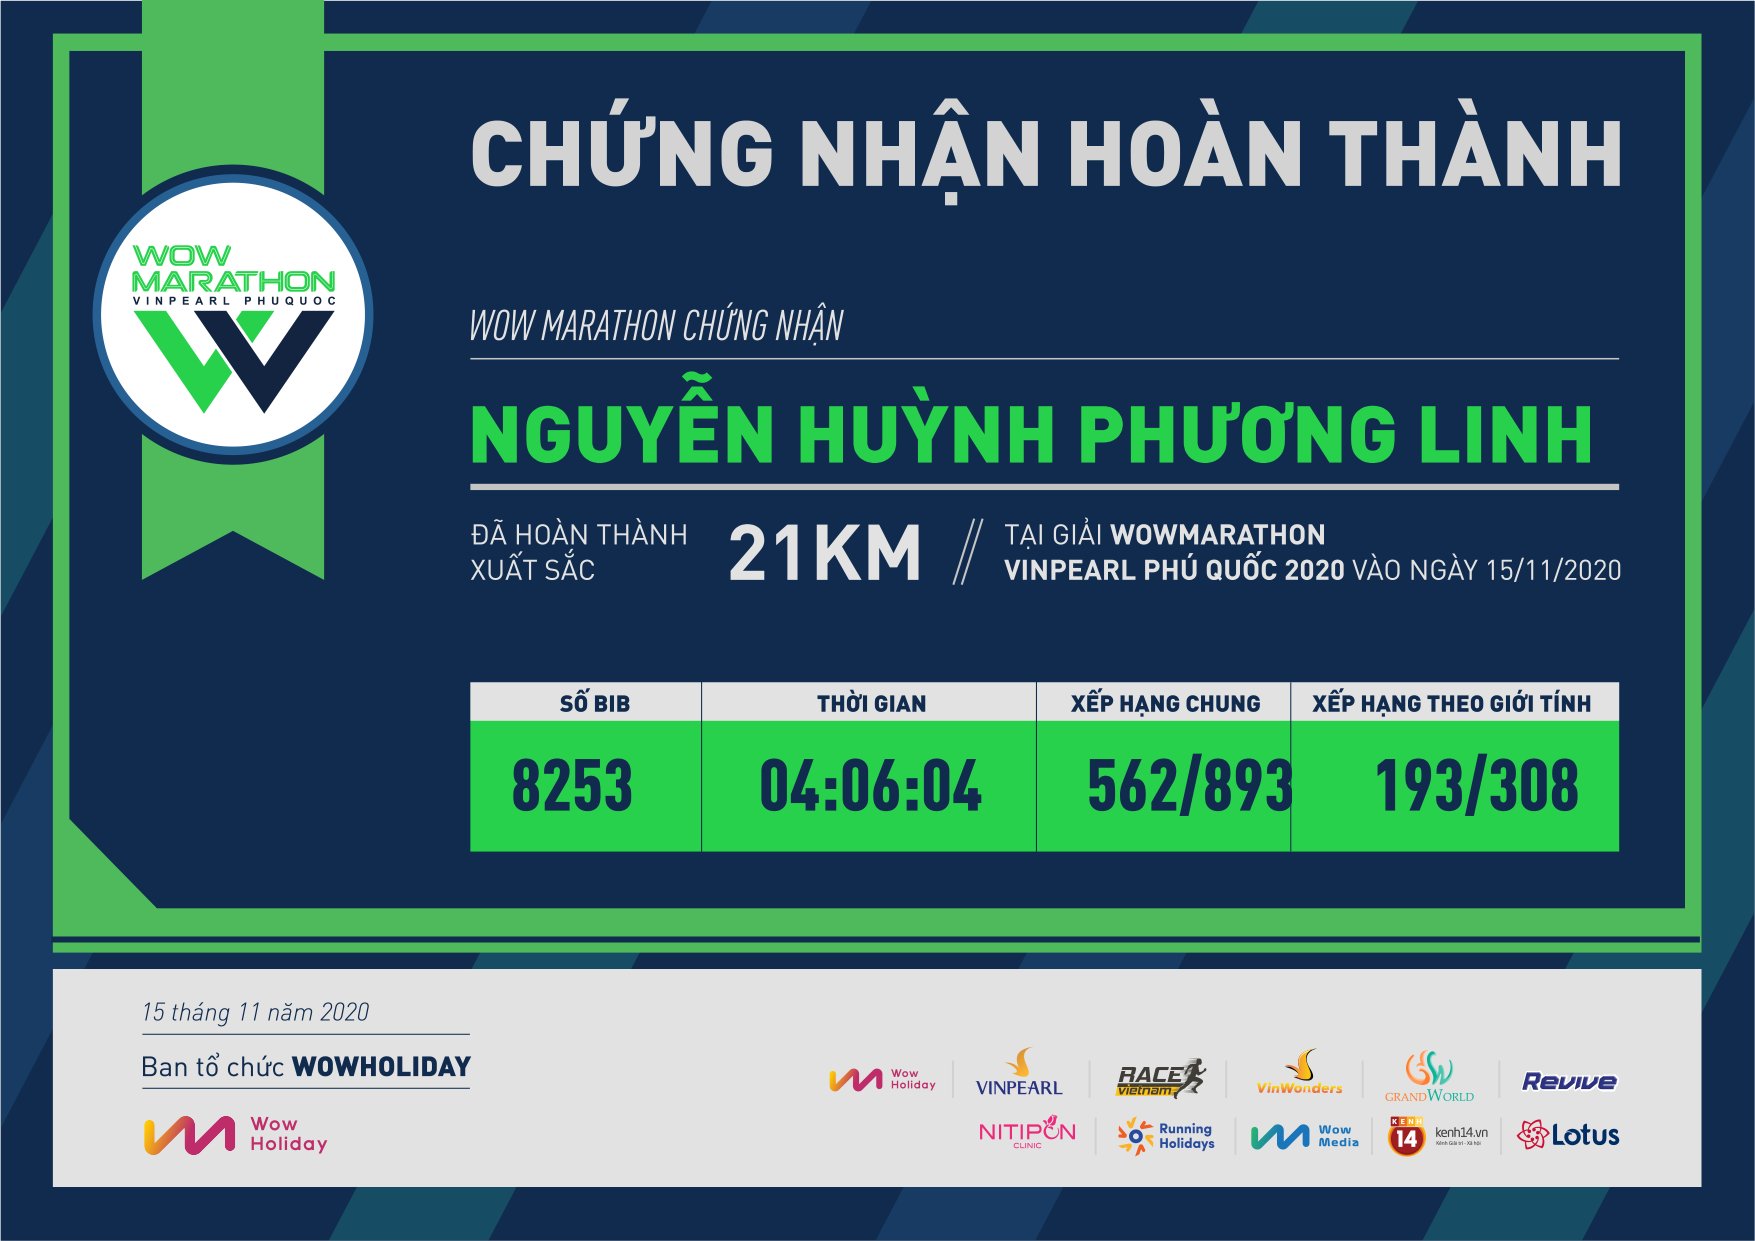 8253 - Nguyễn Huỳnh Phương Linh